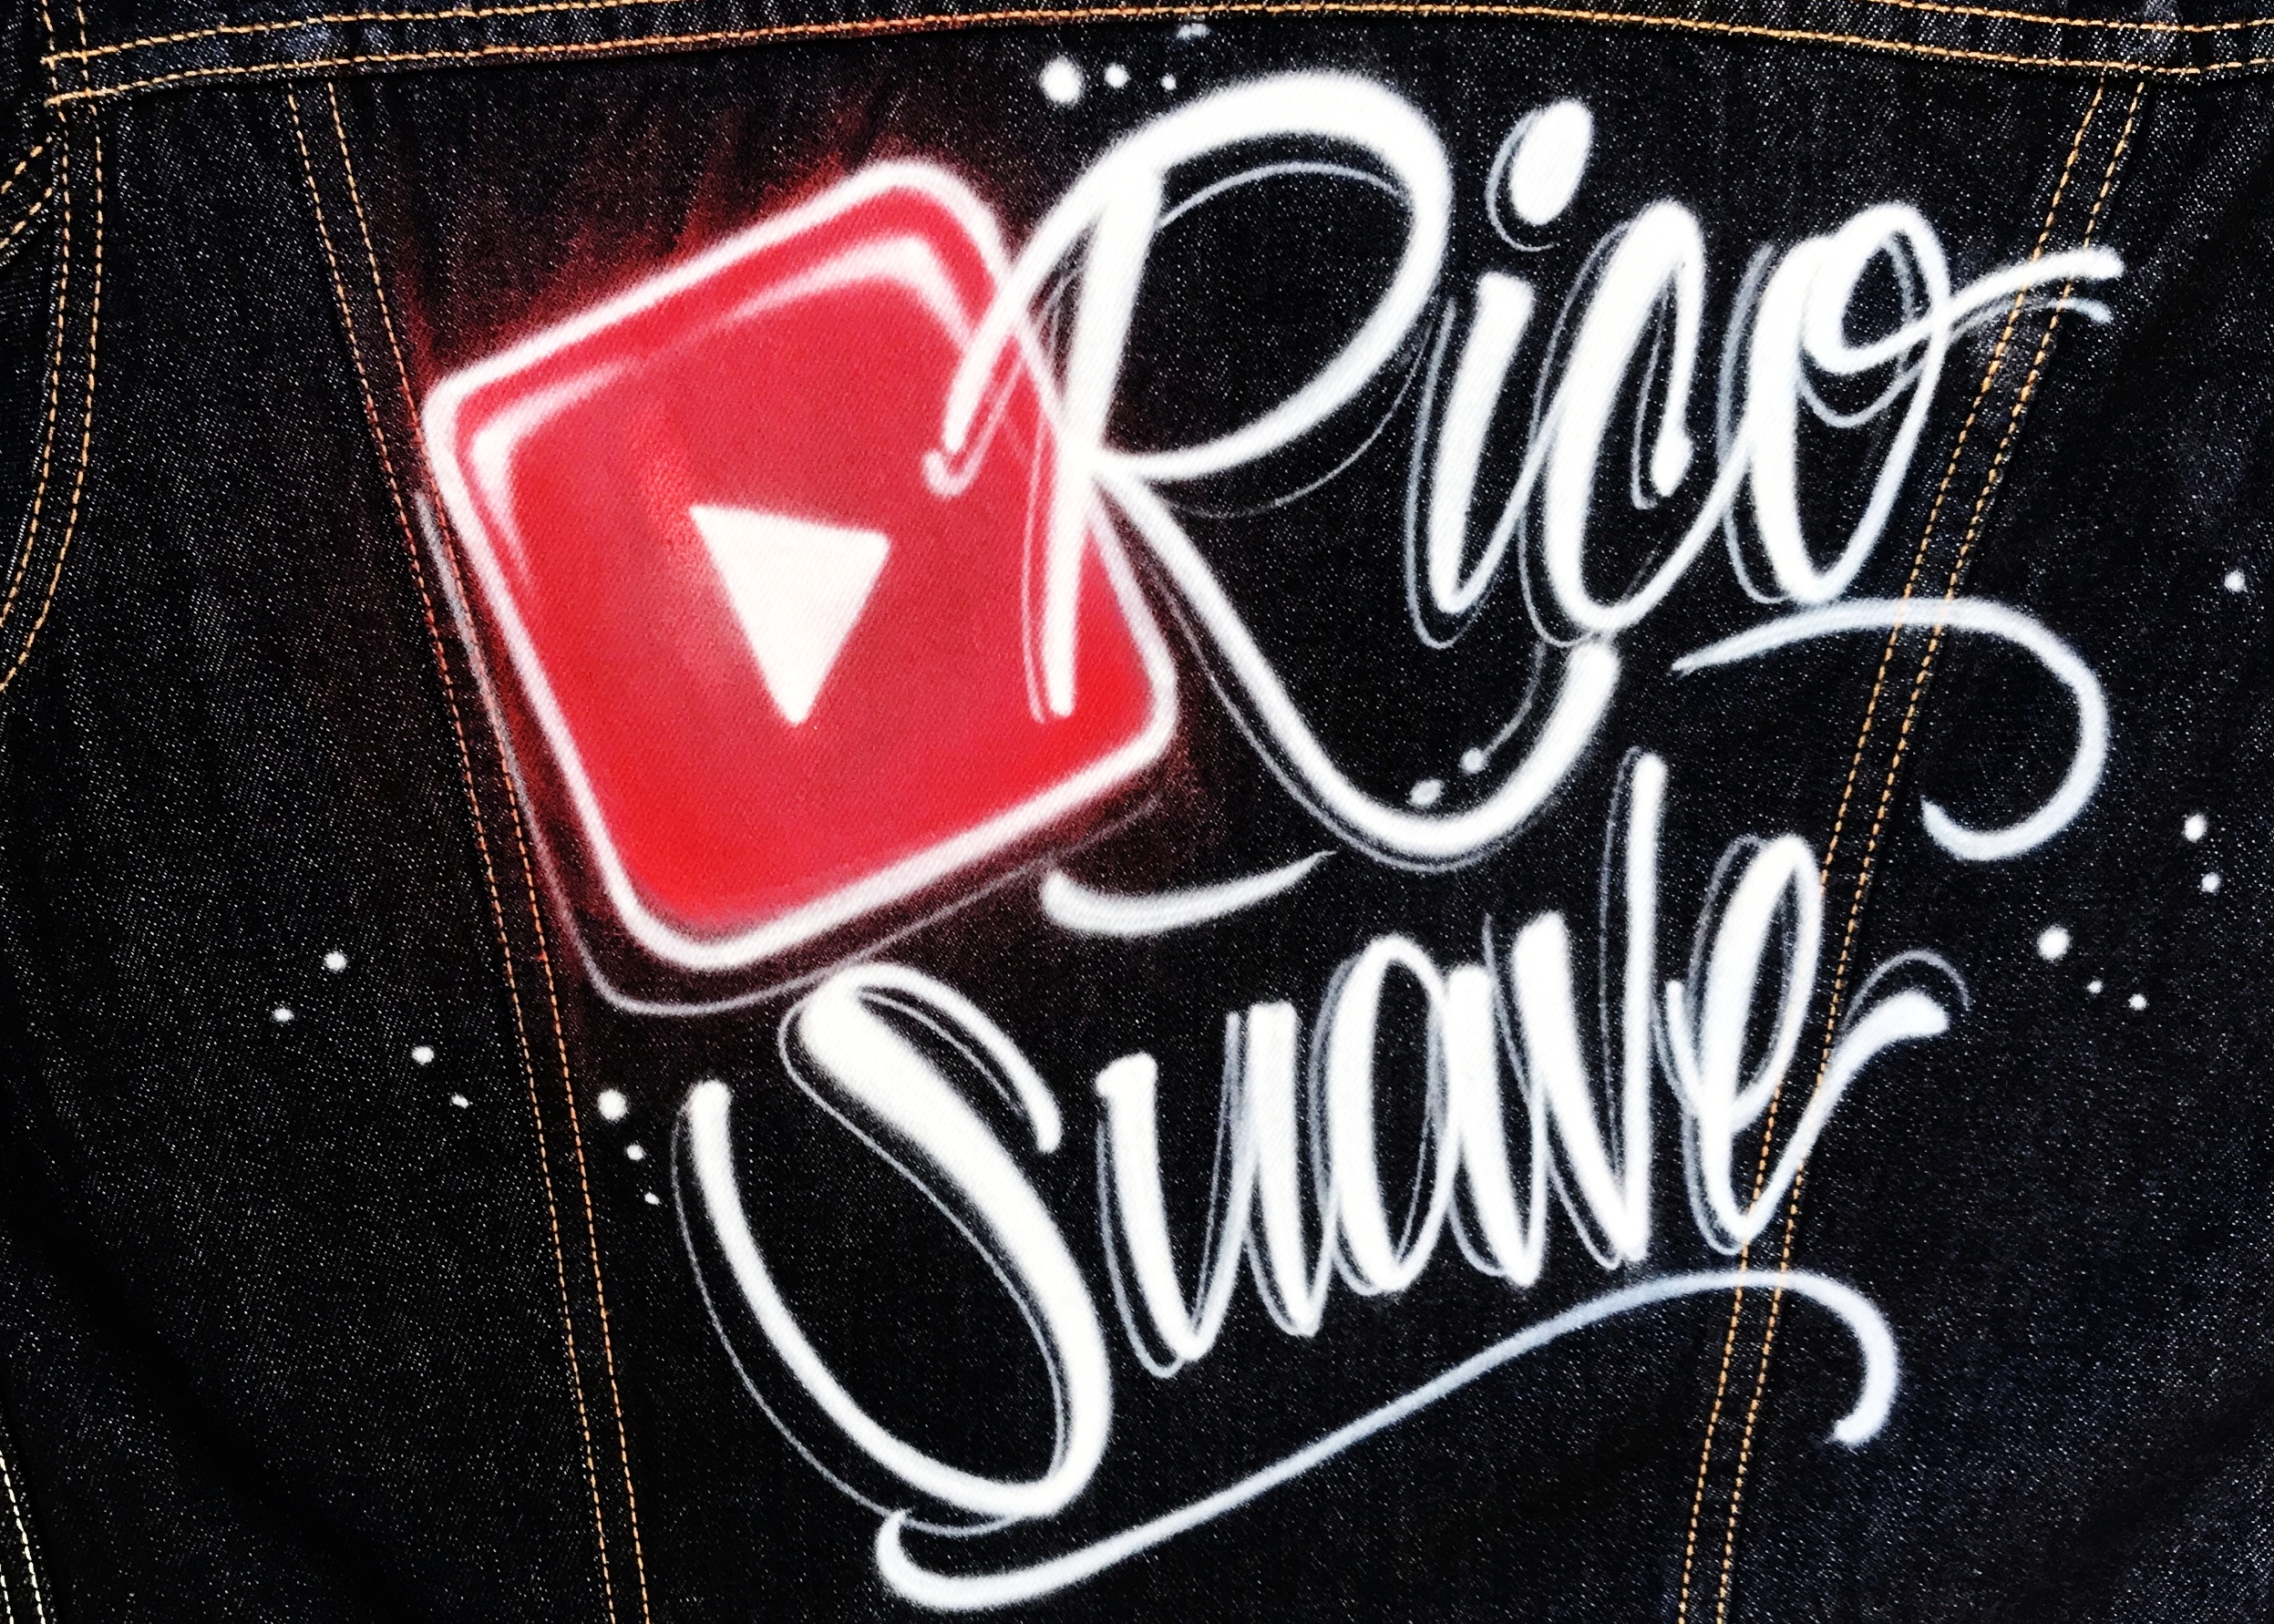 Rico Suave airbrush Levi's jacket